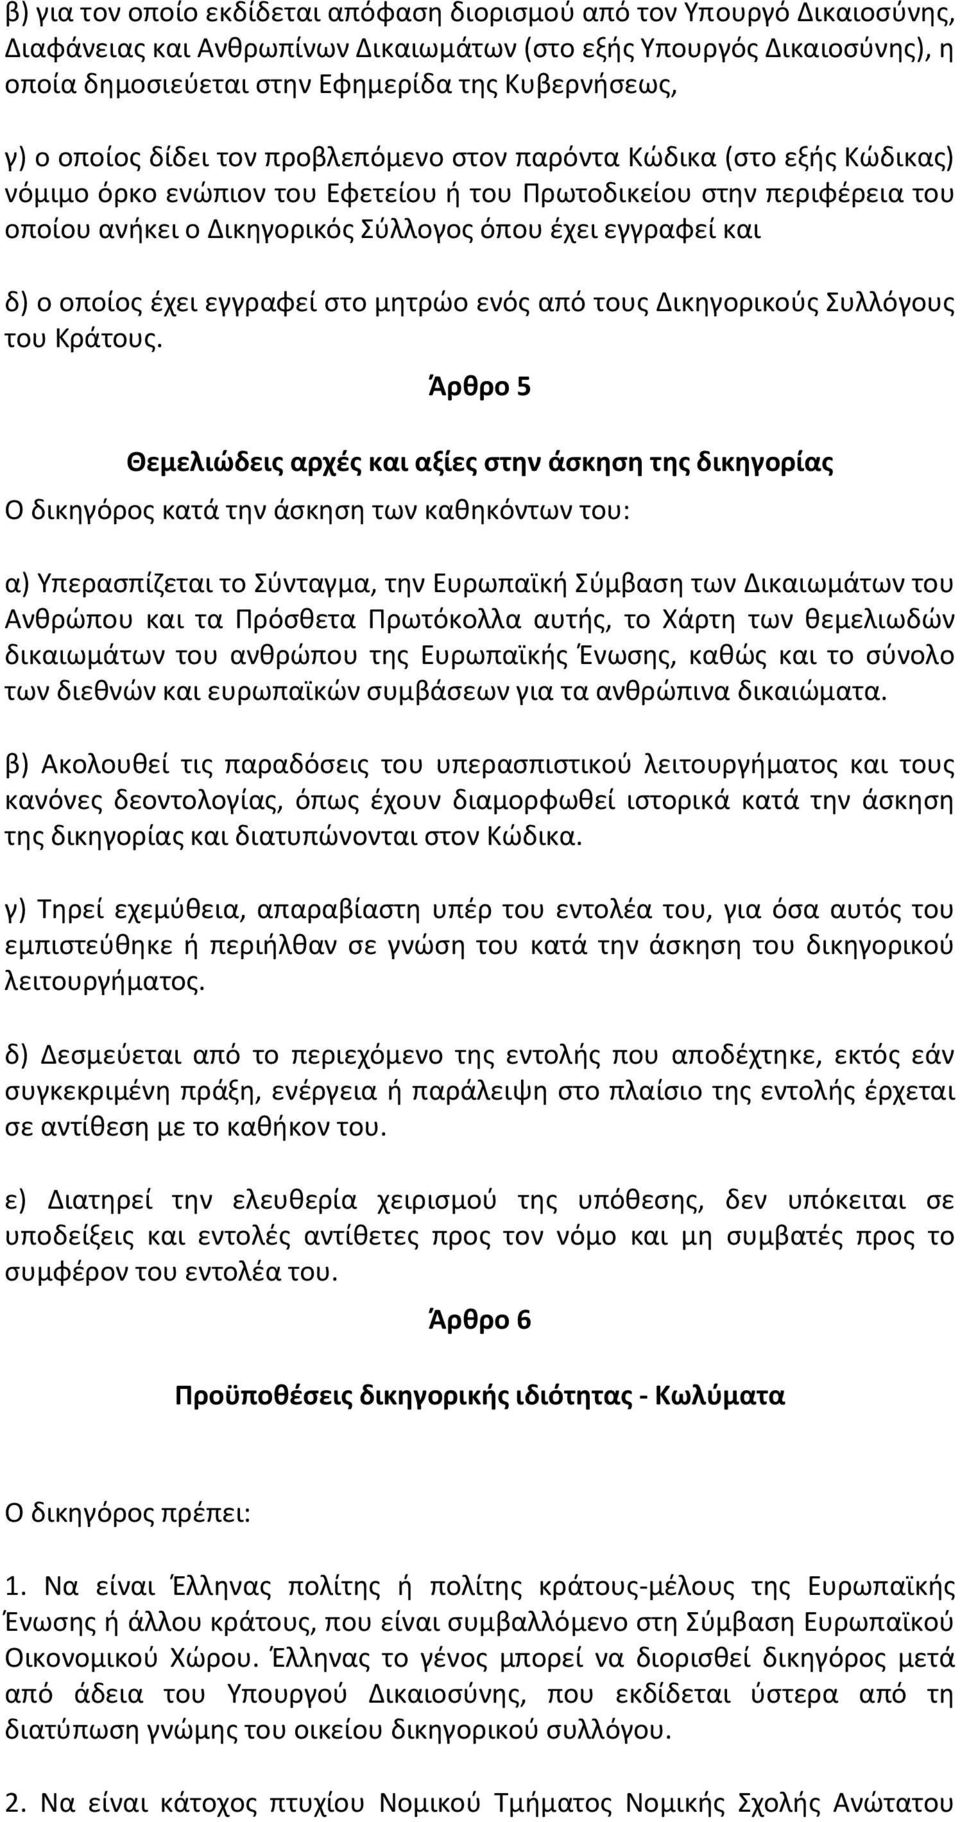 εγγραφεί και δ) ο οποίοσ ζχει εγγραφεί ςτο μθτρϊο ενόσ από τουσ Δικθγορικοφσ Συλλόγουσ του Κράτουσ.